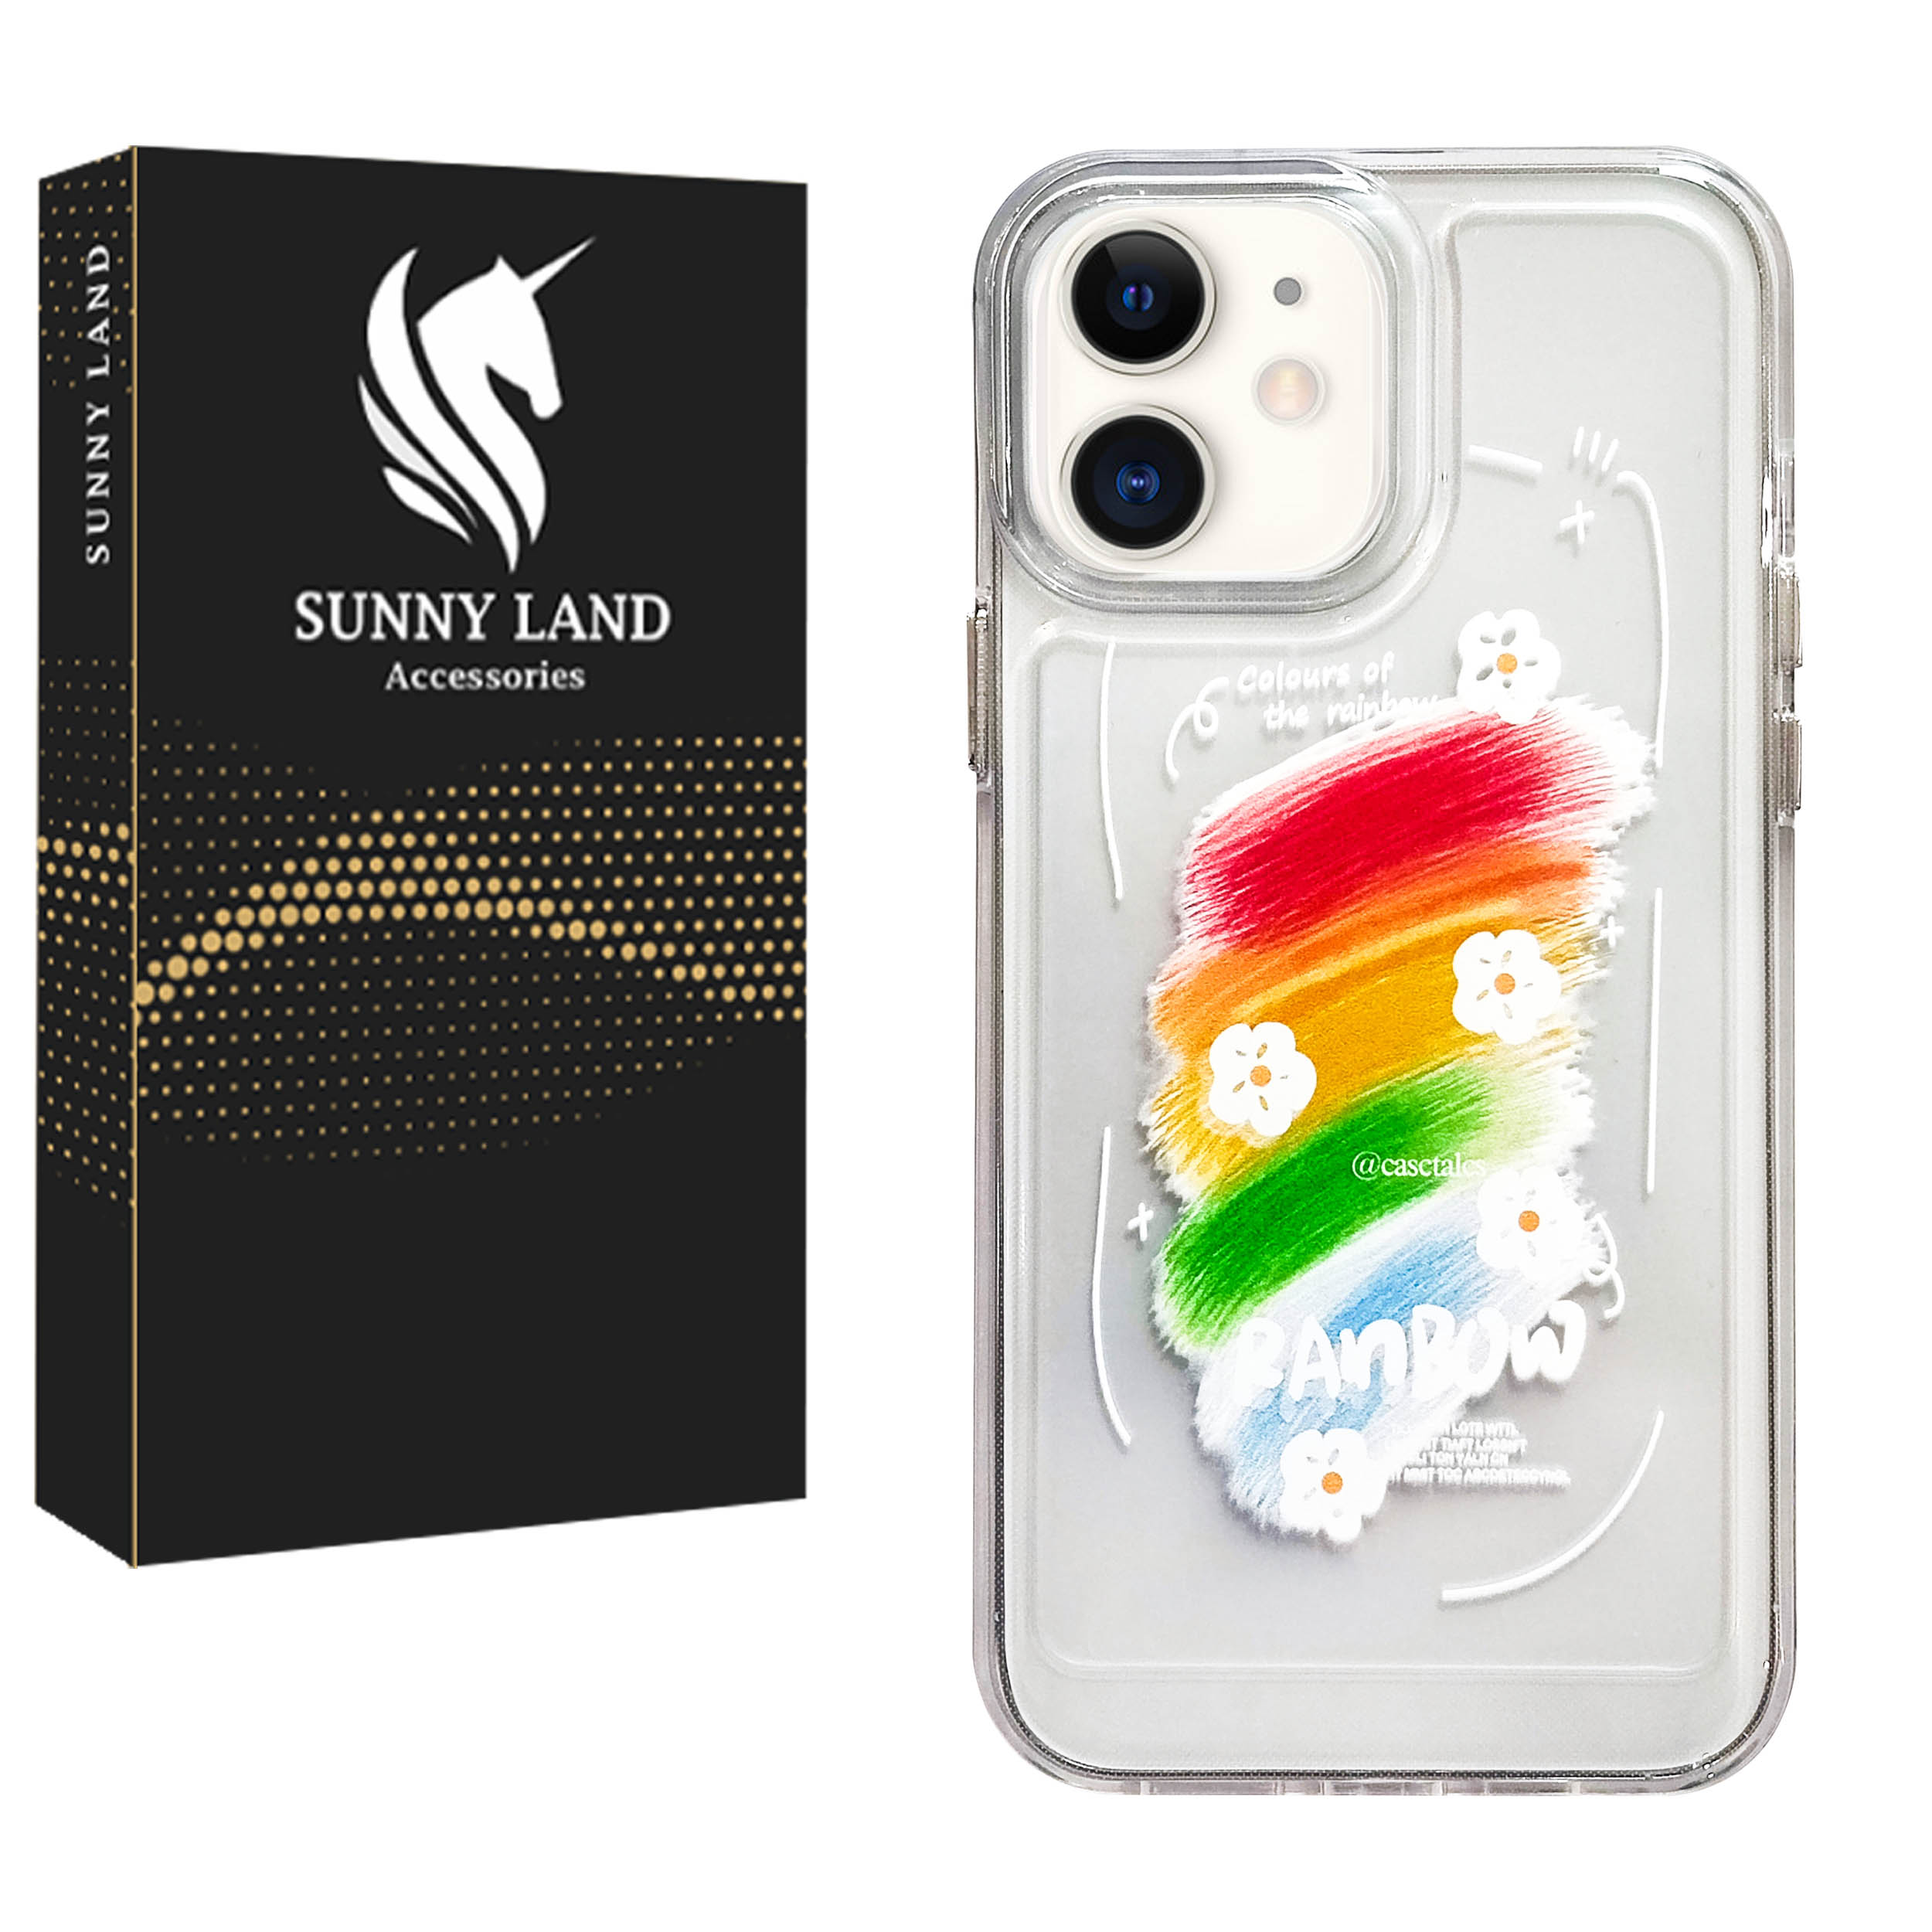 کاور سانی لند مدل Rainbow مناسب برای گوشی موبایل اپل iPhone 11